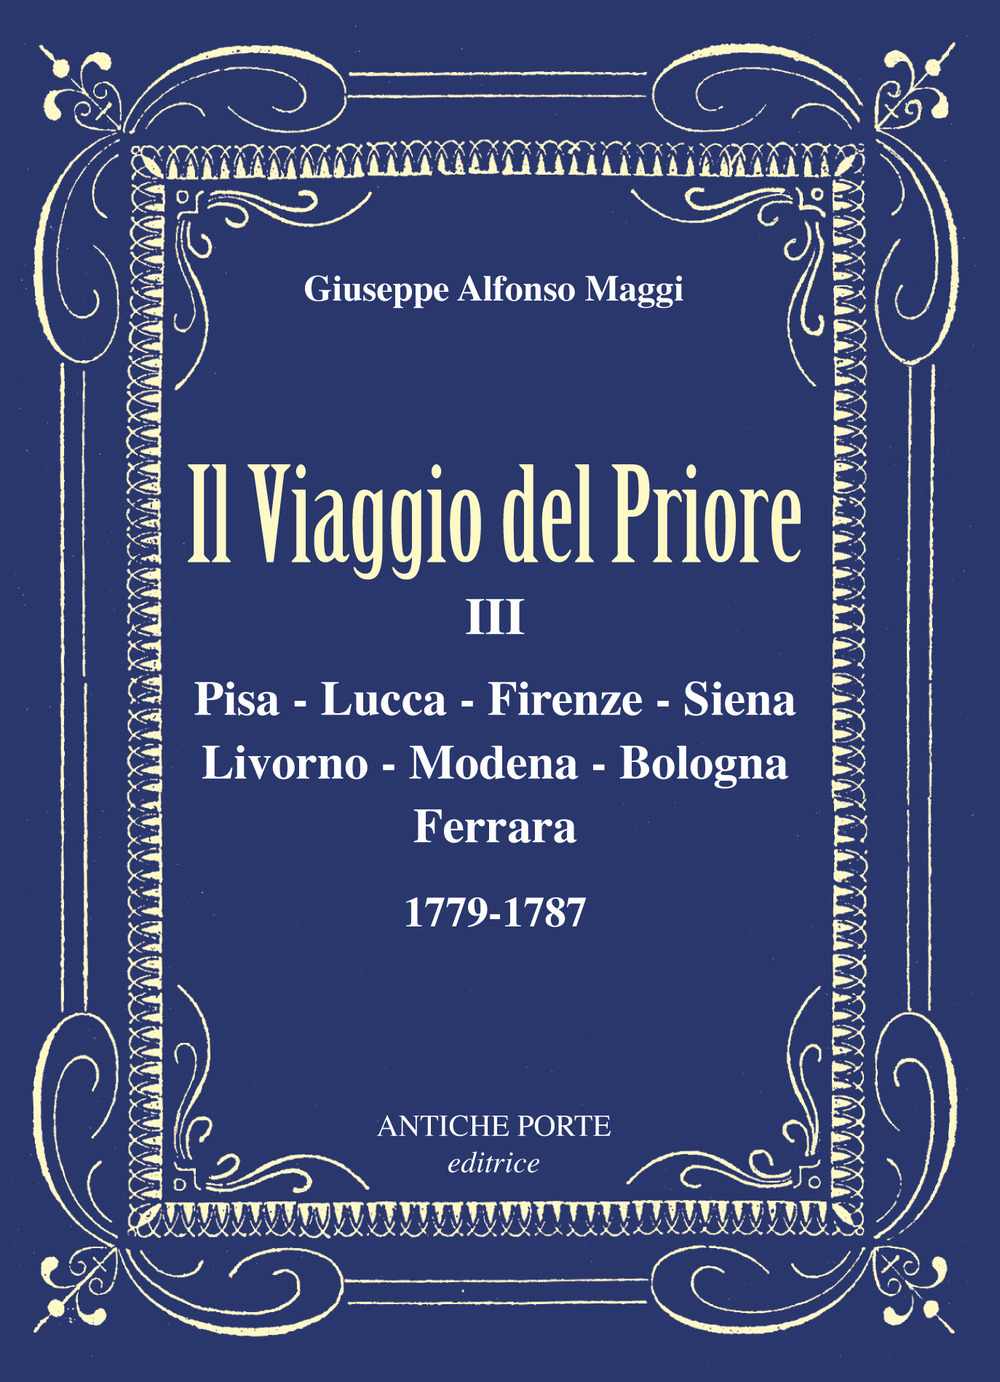 Il viaggio del Priore. Vol. 3: Pisa, Lucca, Firenze, Siena, Livorno, Modena, Bologna, Ferrara 1779-1787